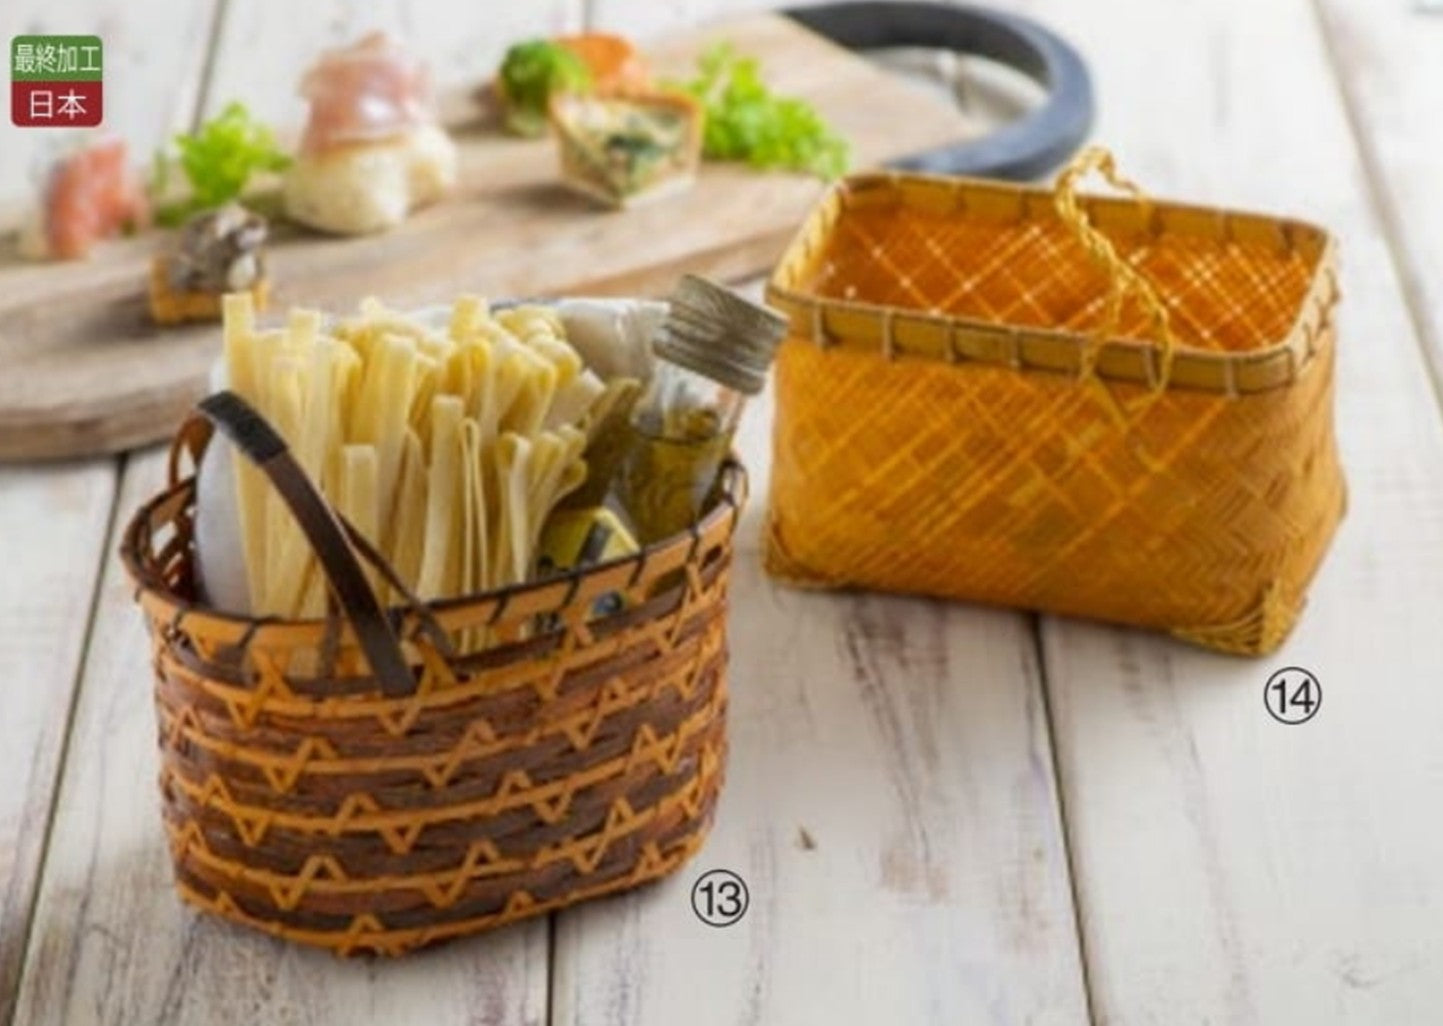 手付竹篭　”Bamboo basket with handle”